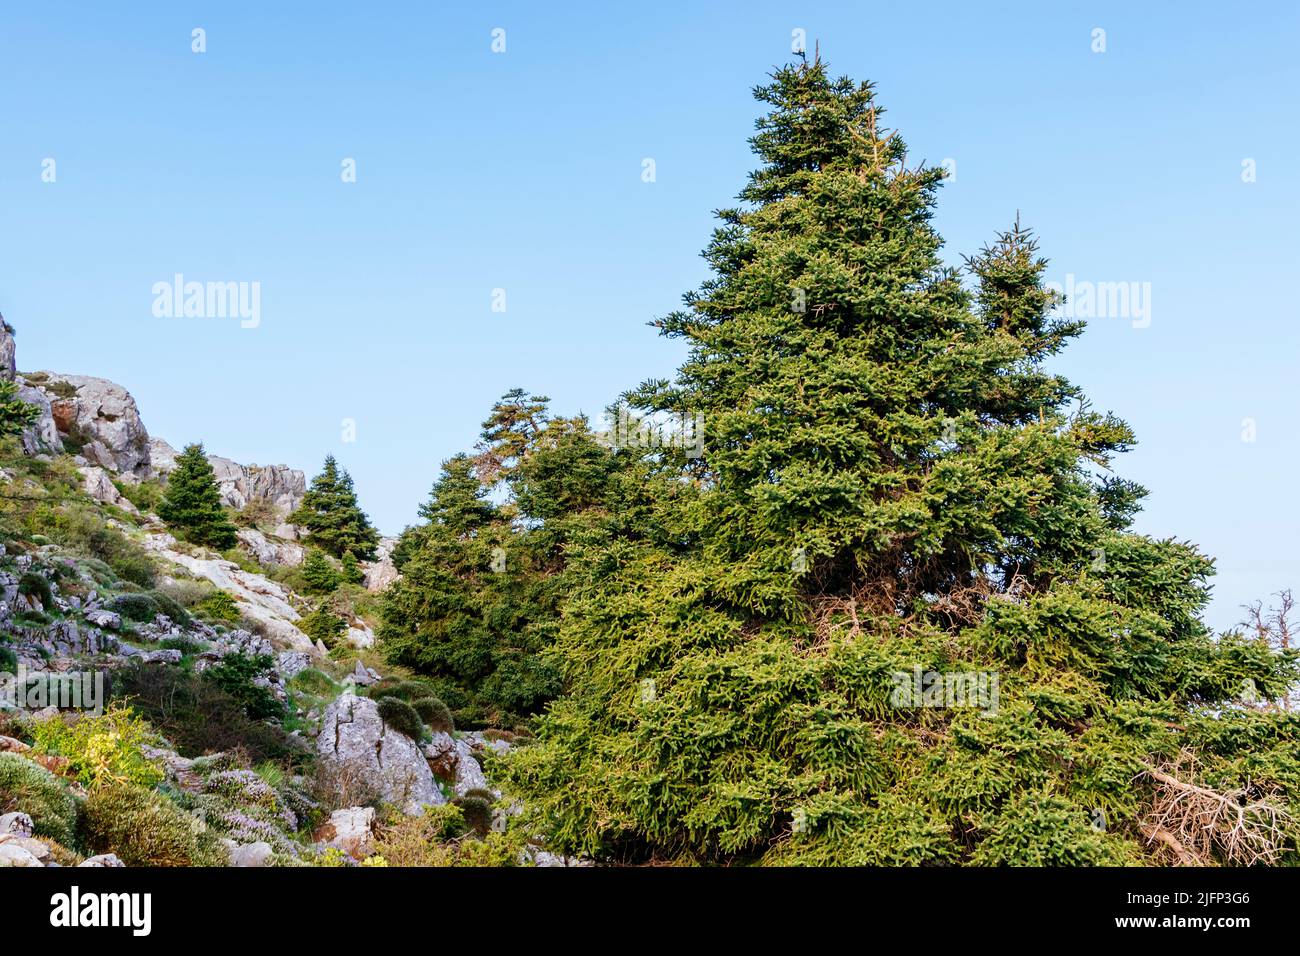 L'Abies pinsapo, le sapin espagnol, est une espèce d'arbre de la famille des Pinaceae, originaire du sud de l'Espagne et du nord du Maroc. Sierra de las Nieves, Mála Banque D'Images